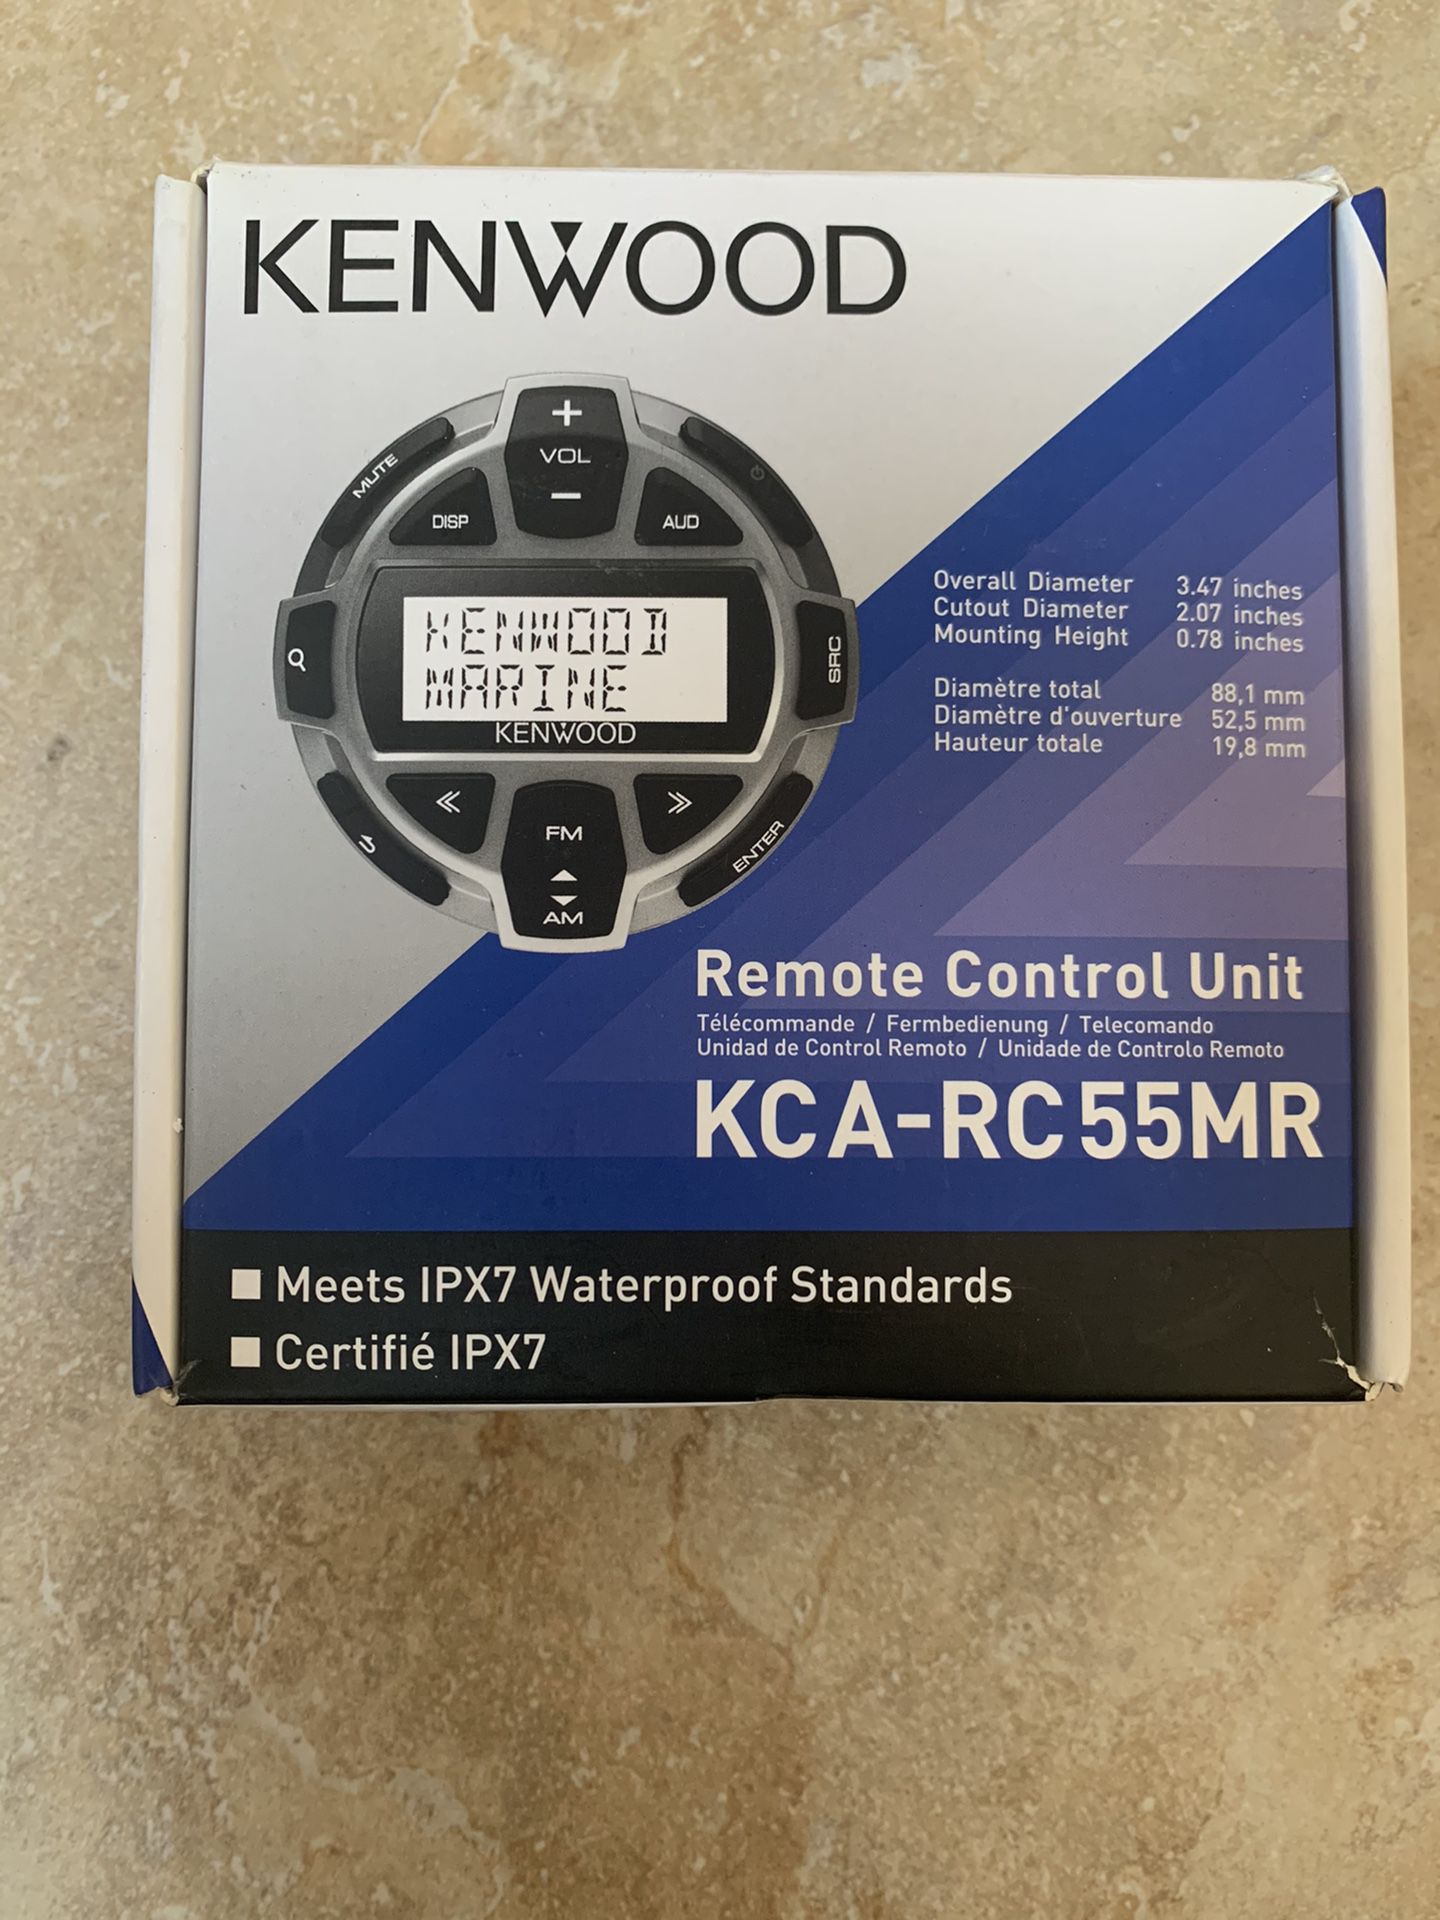 Kenwood Marine remote control unit KCA-RC 55MR